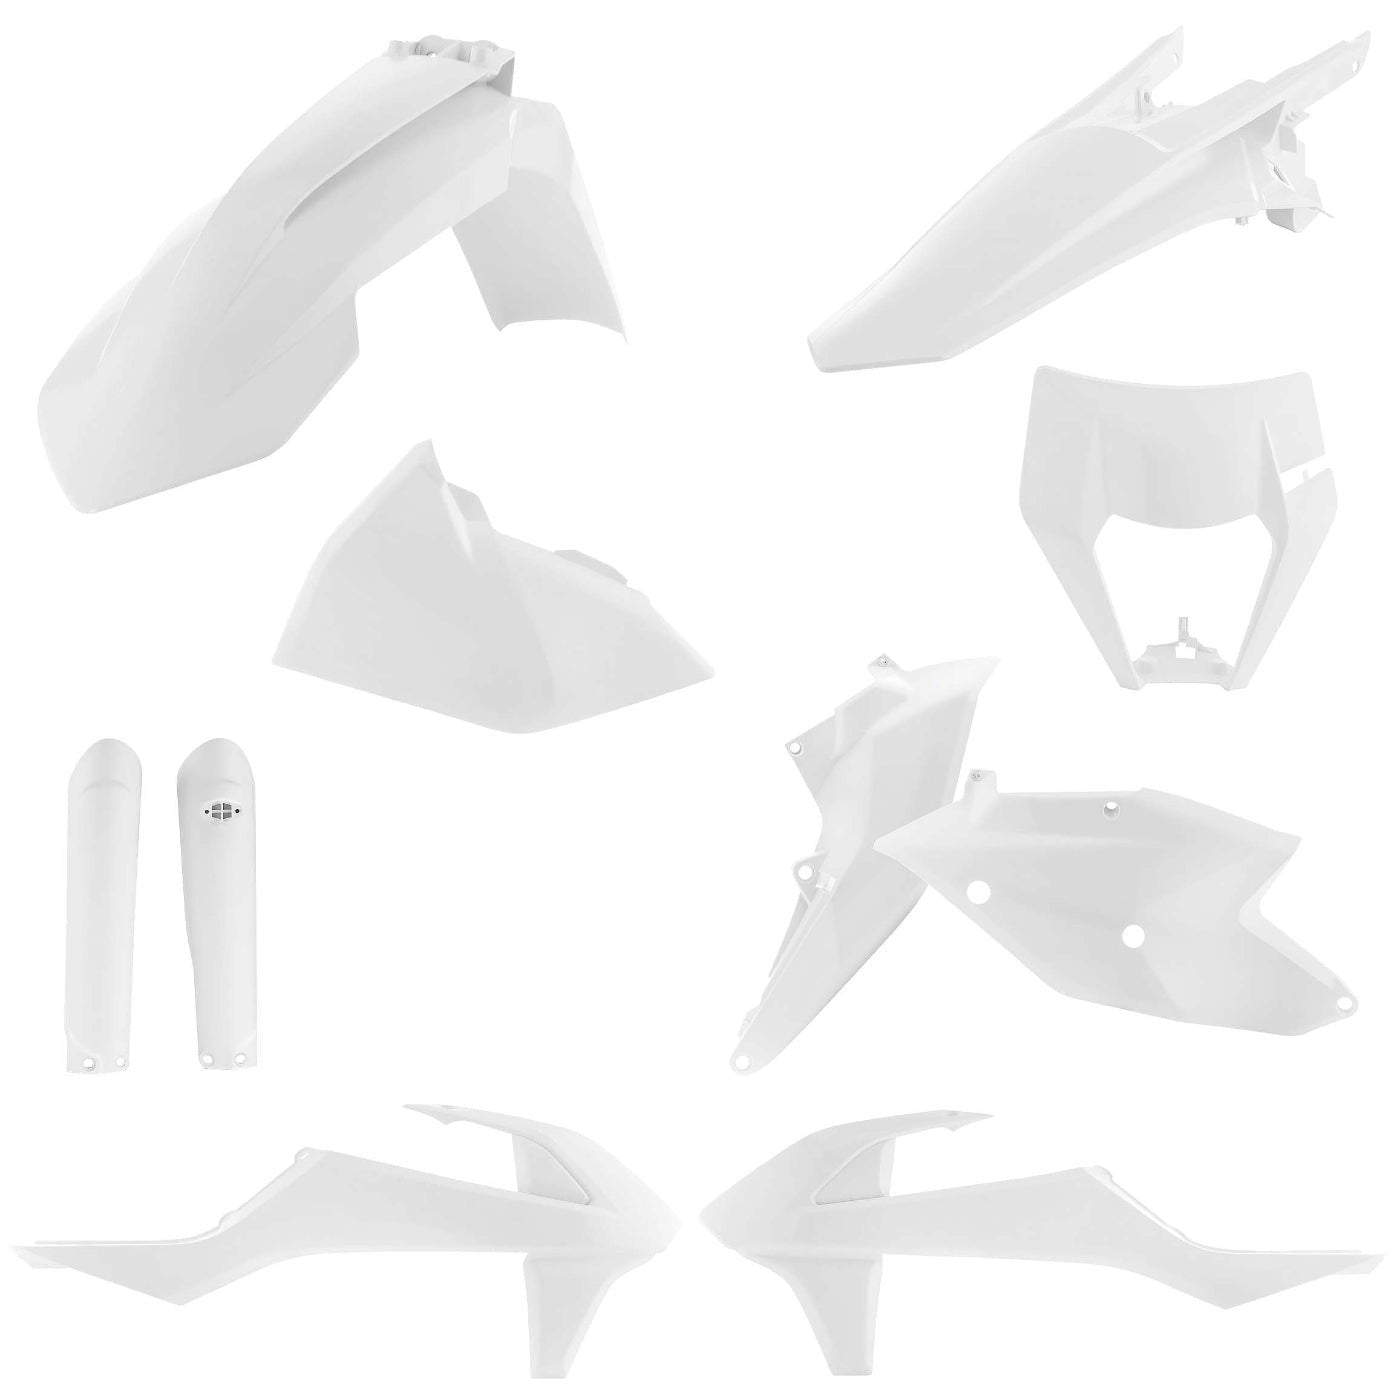 Acerbis White Full Plastic Kit for KTM - 2733420002